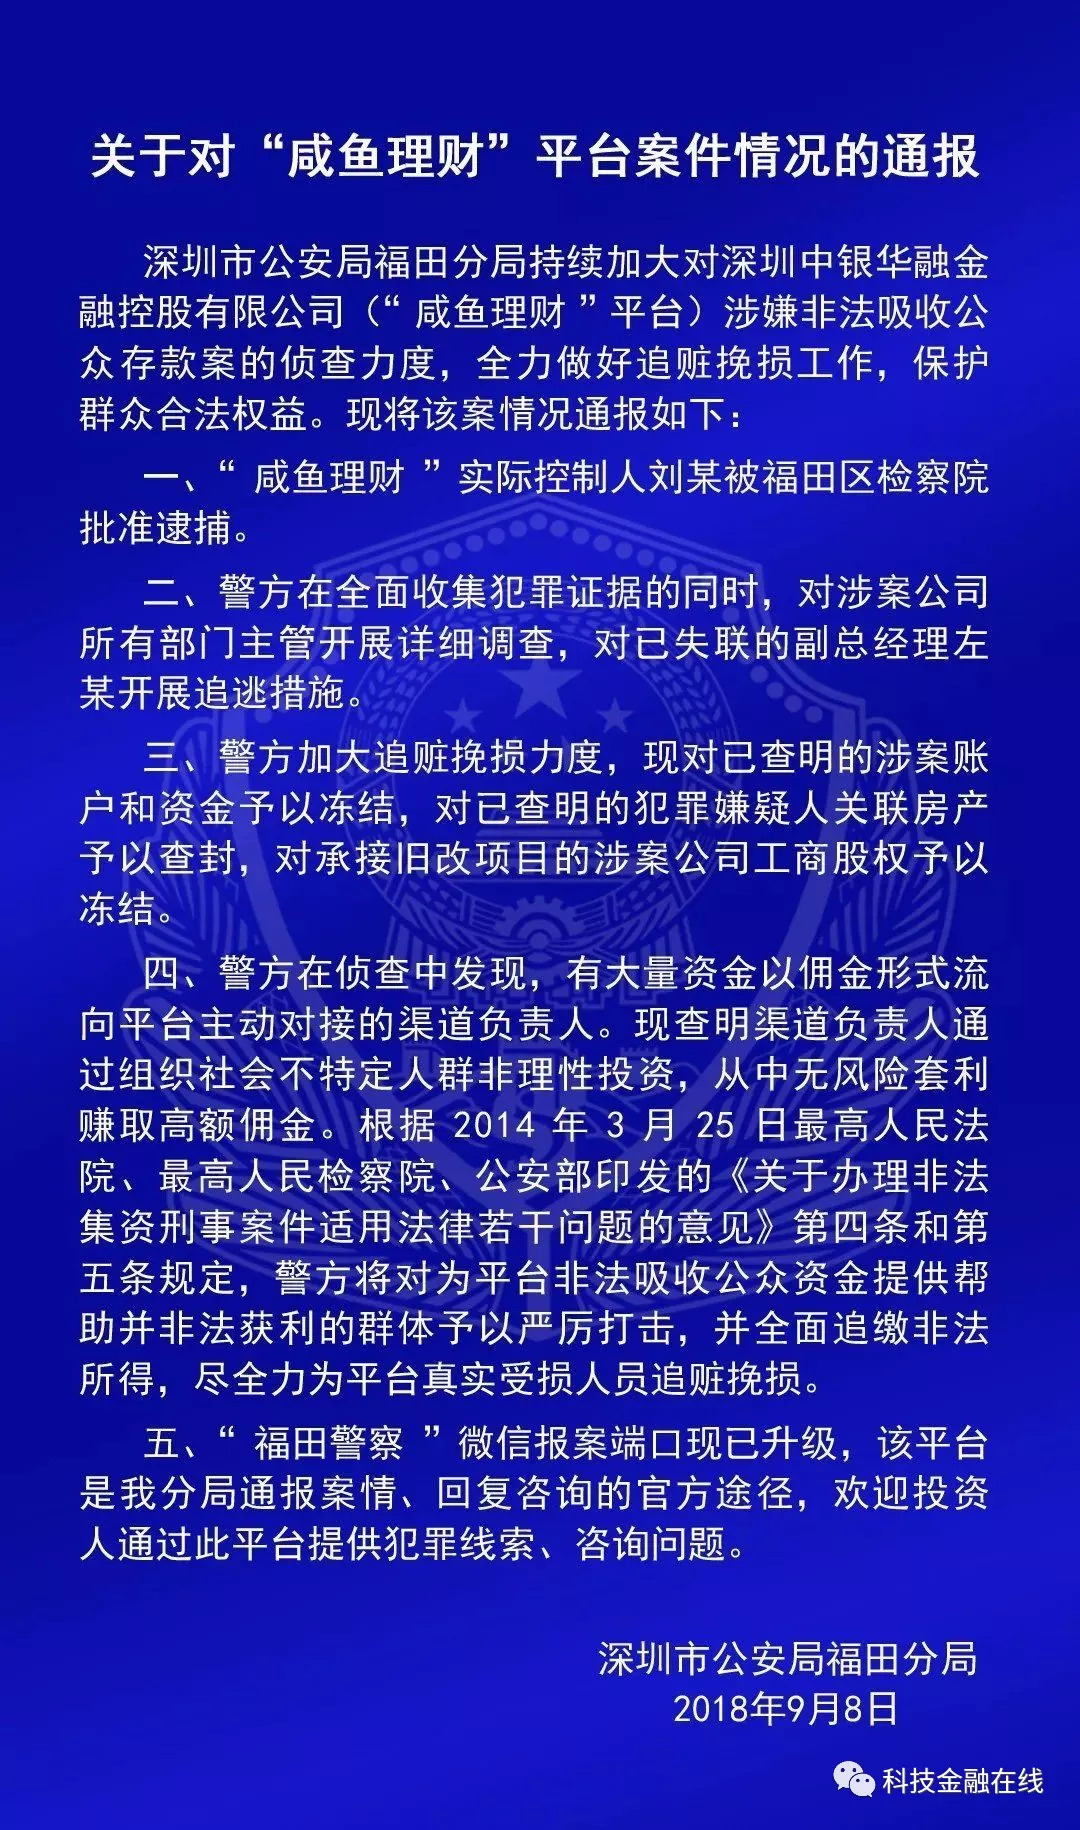 深圳警方通报钱爸爸、咸鱼理财、五星财富等6